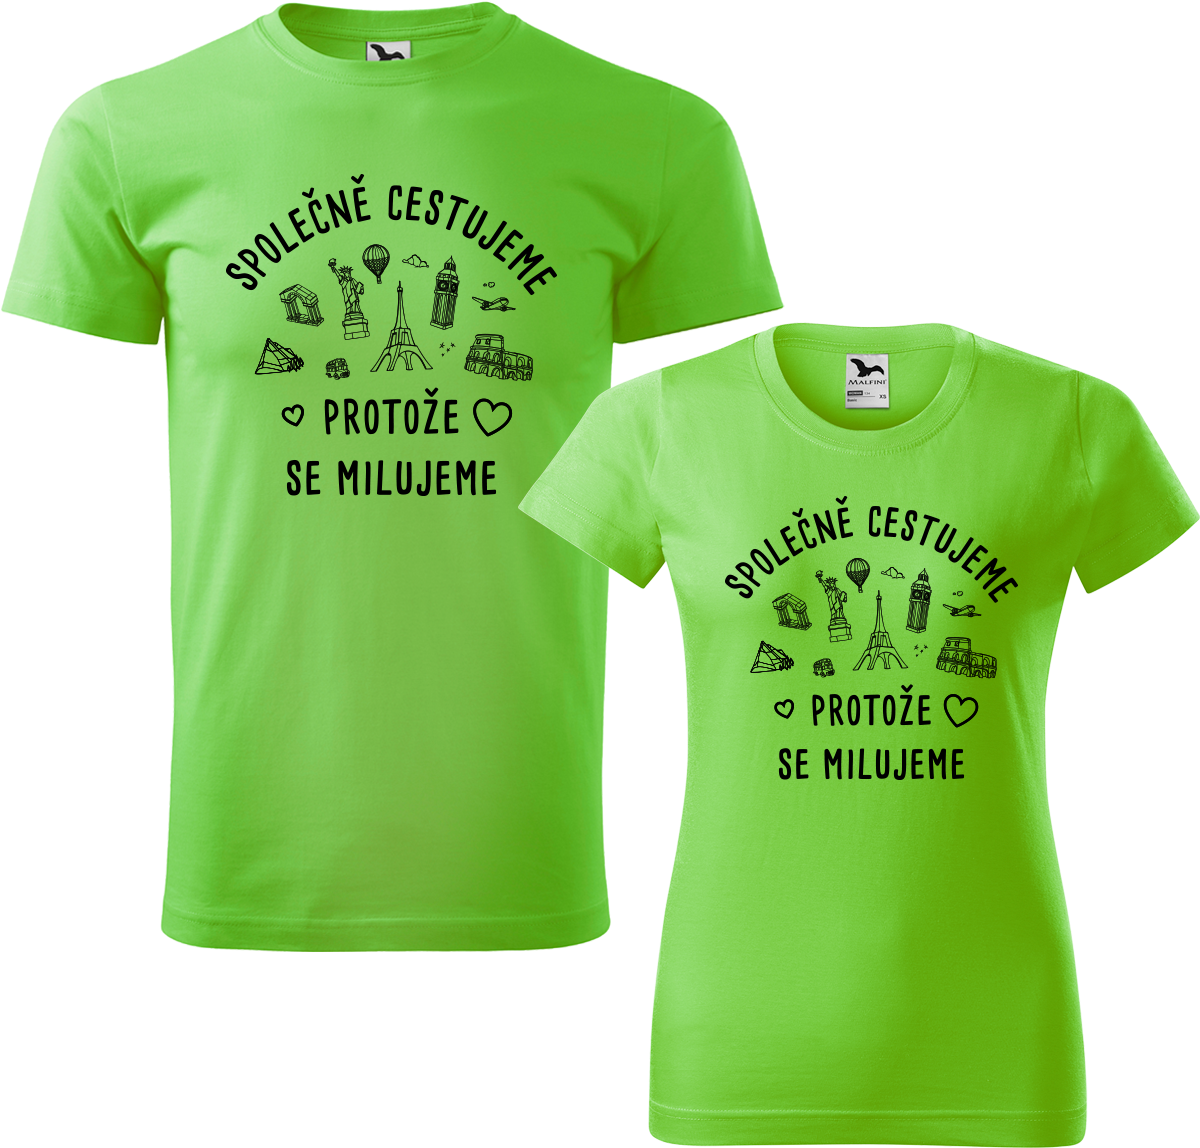 Tričko pro páry - Společně cestujeme protože se milujeme Barva: Apple Green (92), Velikost dámské tričko: M, Velikost pánské tričko: M